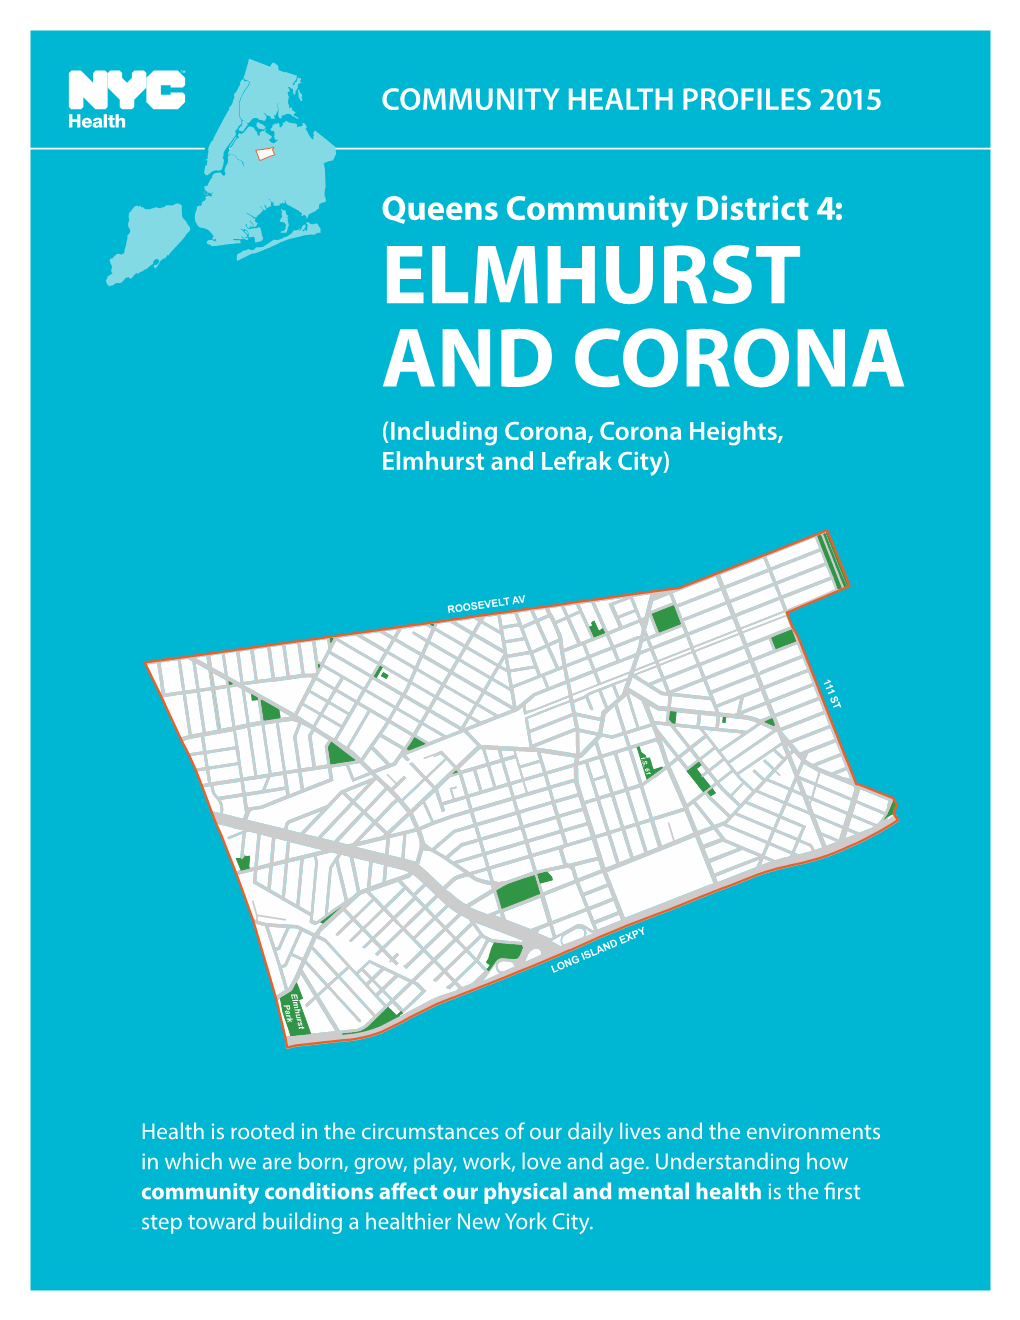 ELMHURST and CORONA (Including Corona, Corona Heights, Elmhurst and Lefrak City)